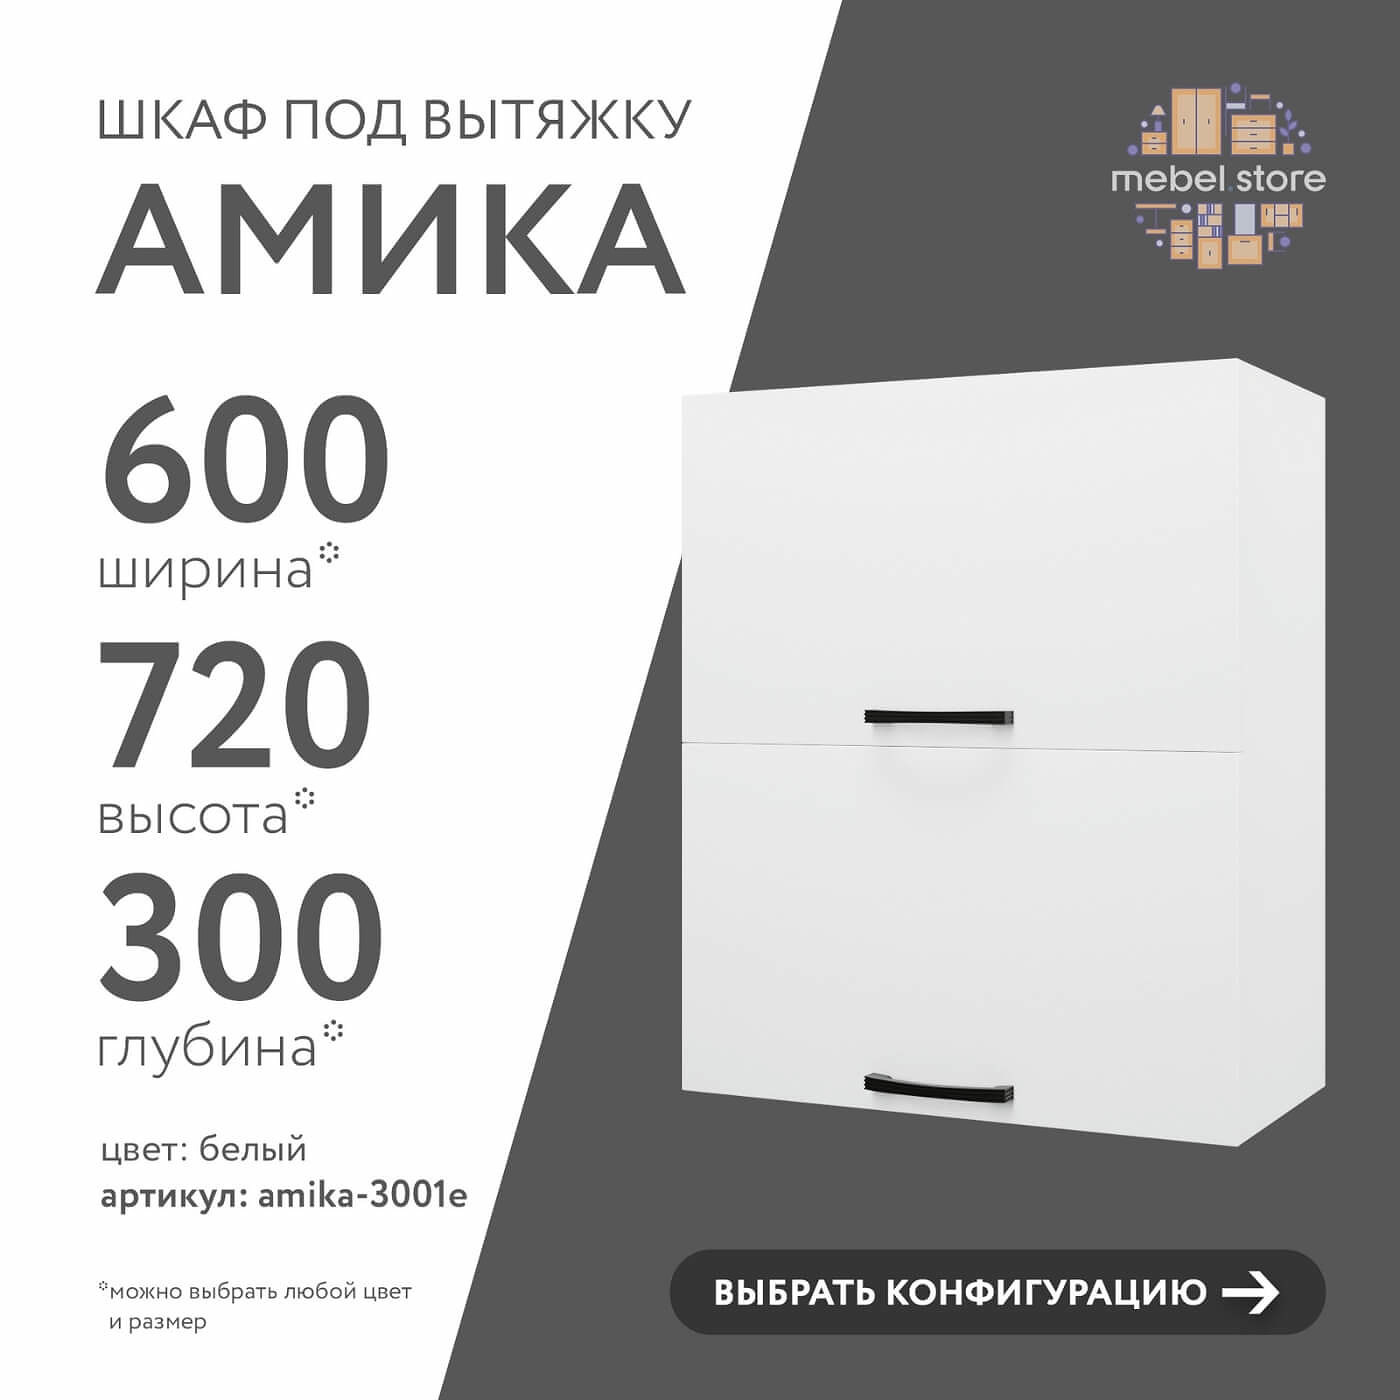 Шкаф под вытяжку Амика-3001e минимализм для кухни - фото 1 large